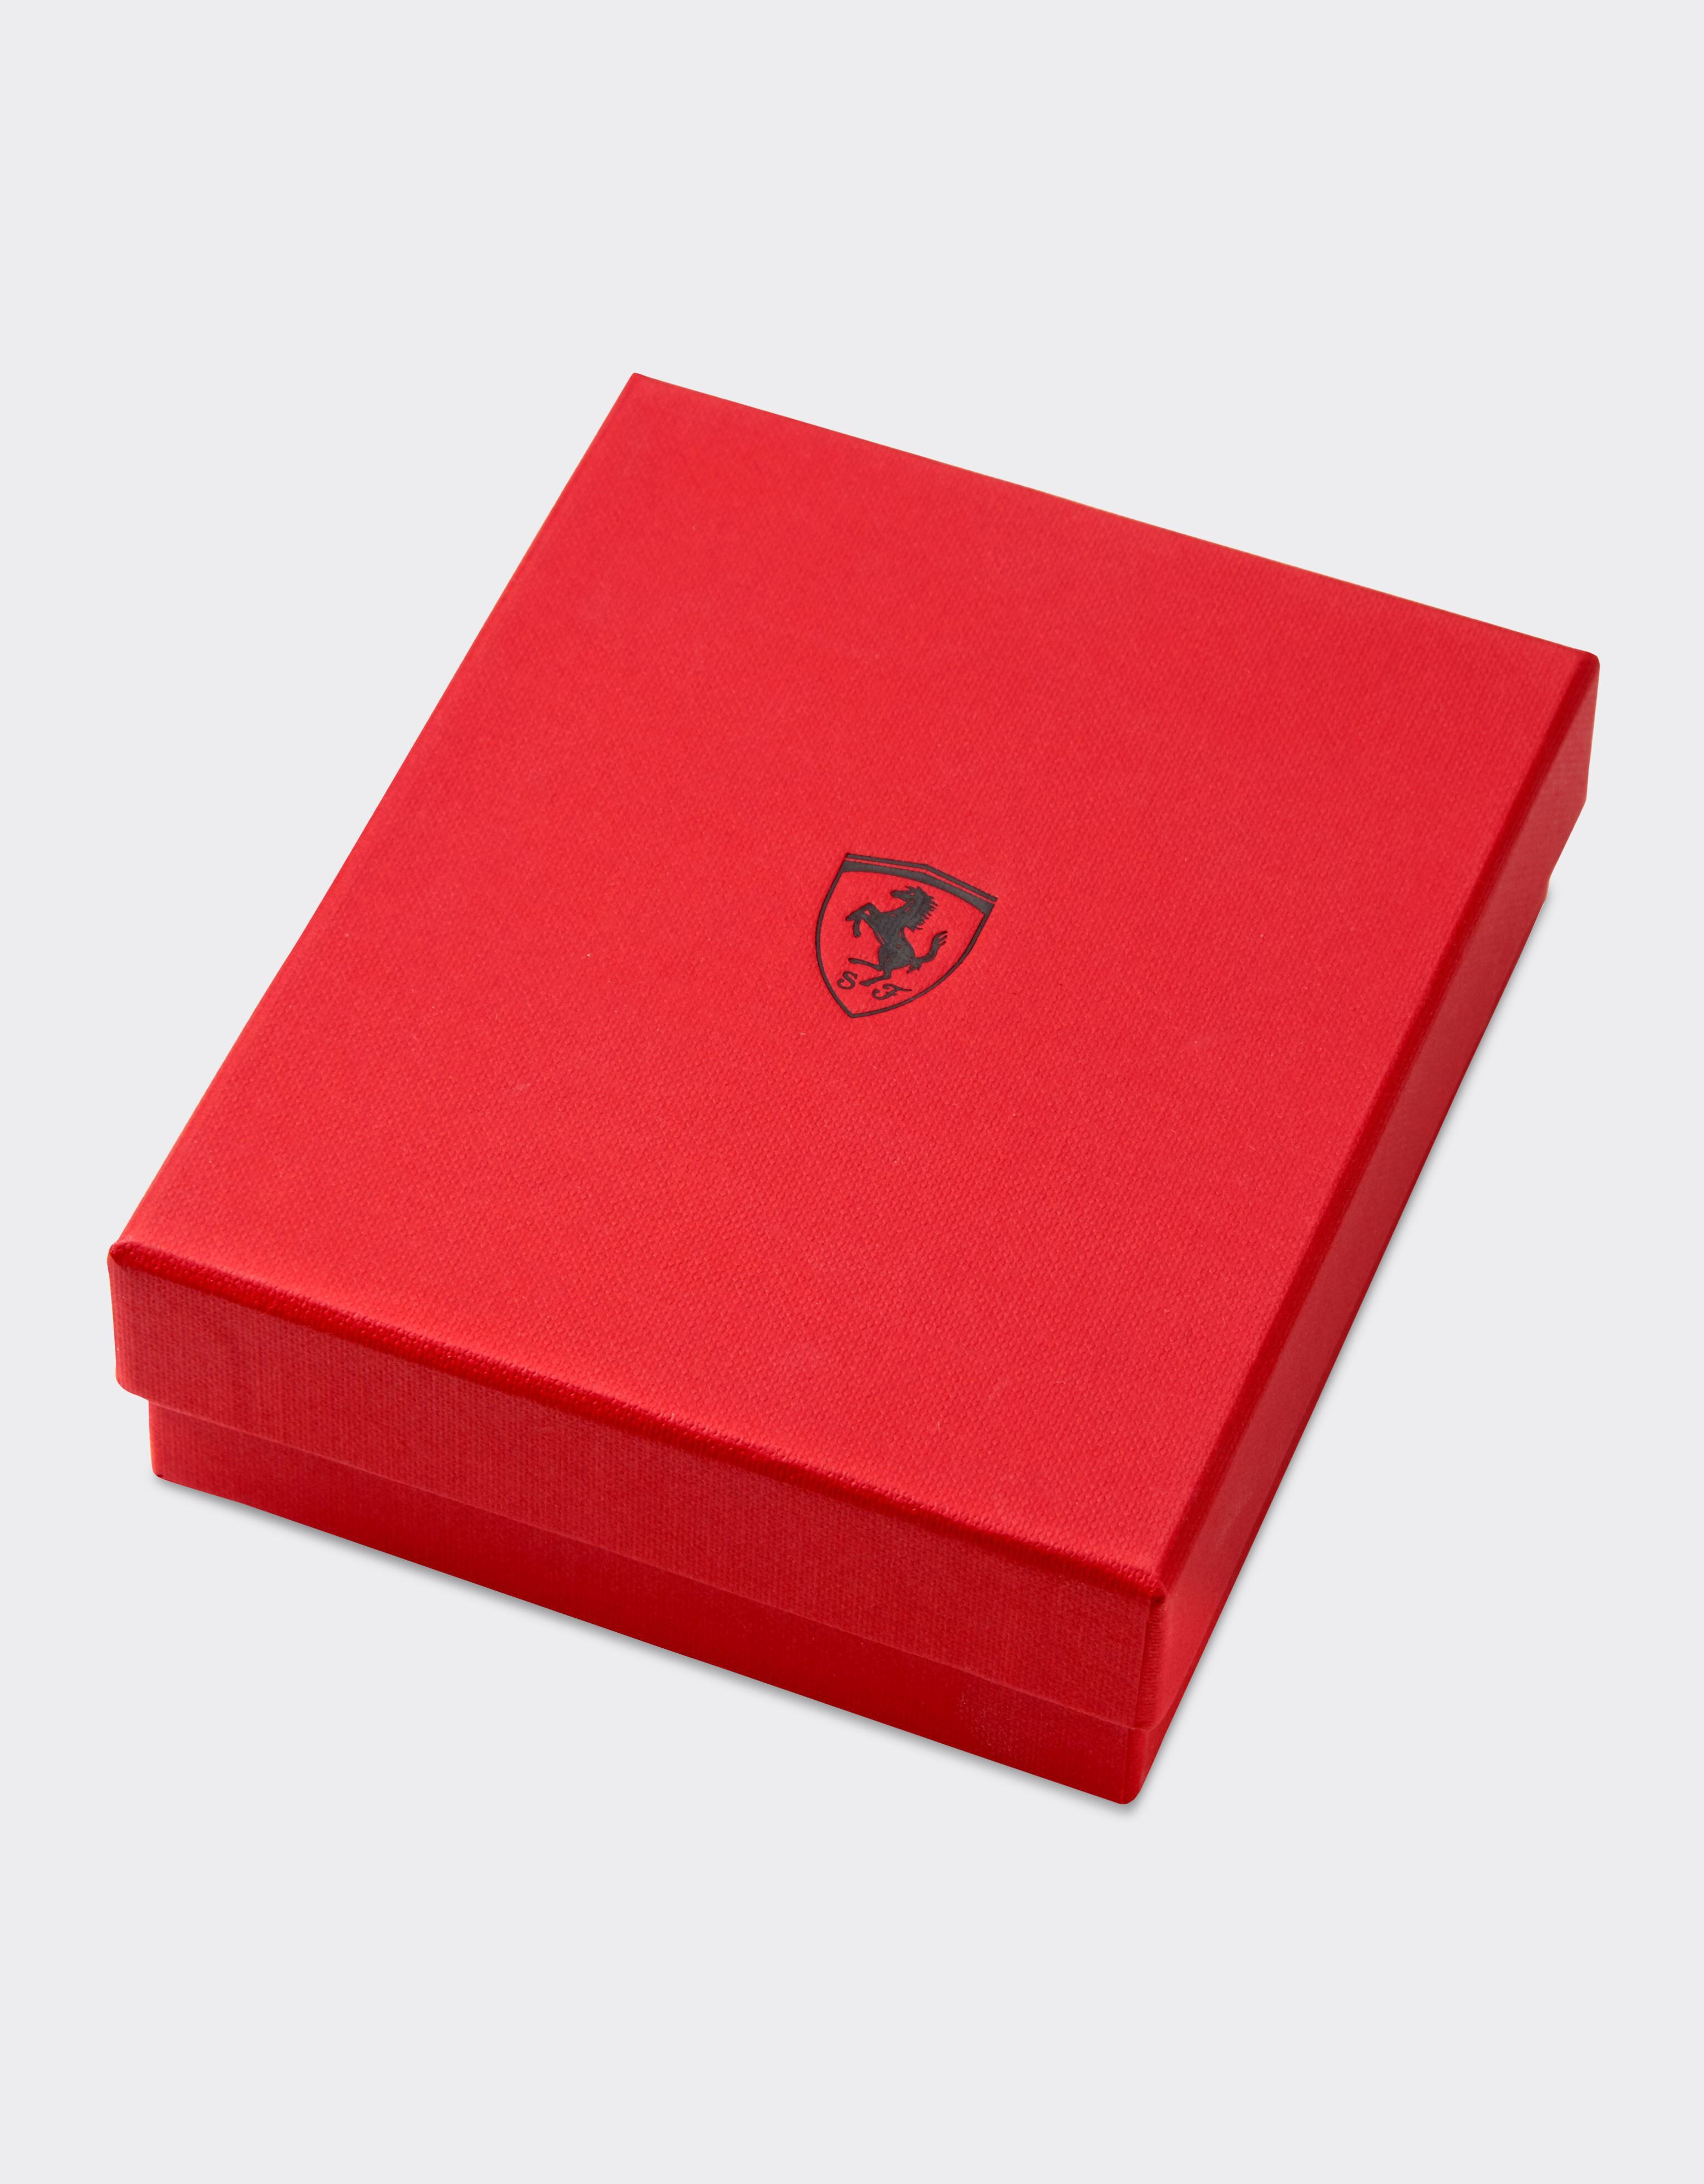 Ferrari セカンドライフ テーブルトップ オブジェ エナメル加工Scudetto付き イタリア製 イエロー 47306f